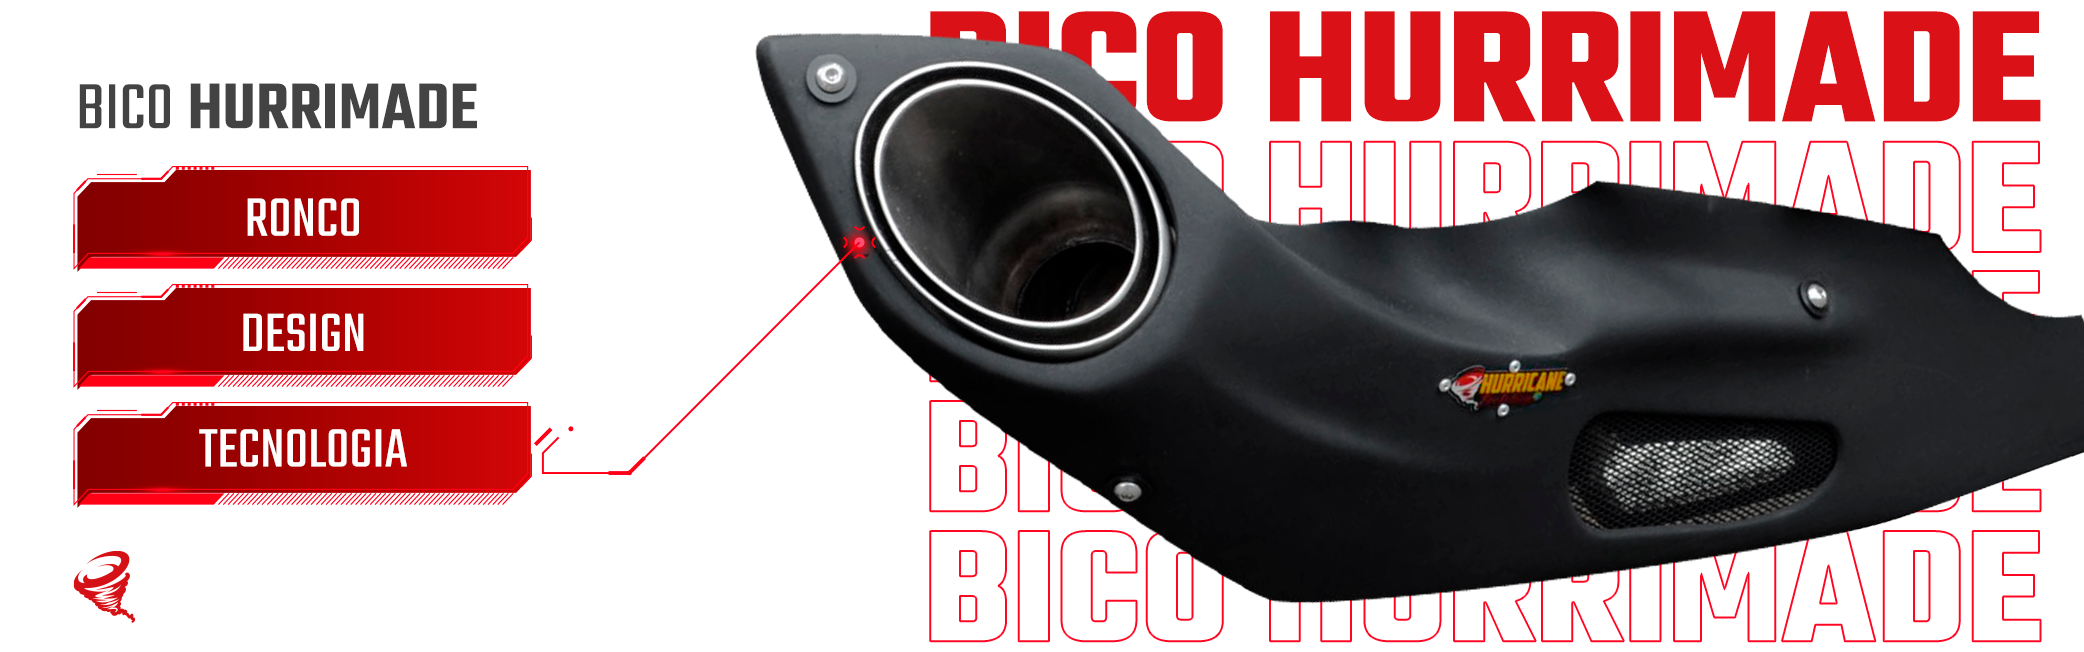 Imagem do slide Bico Hurrimade - 